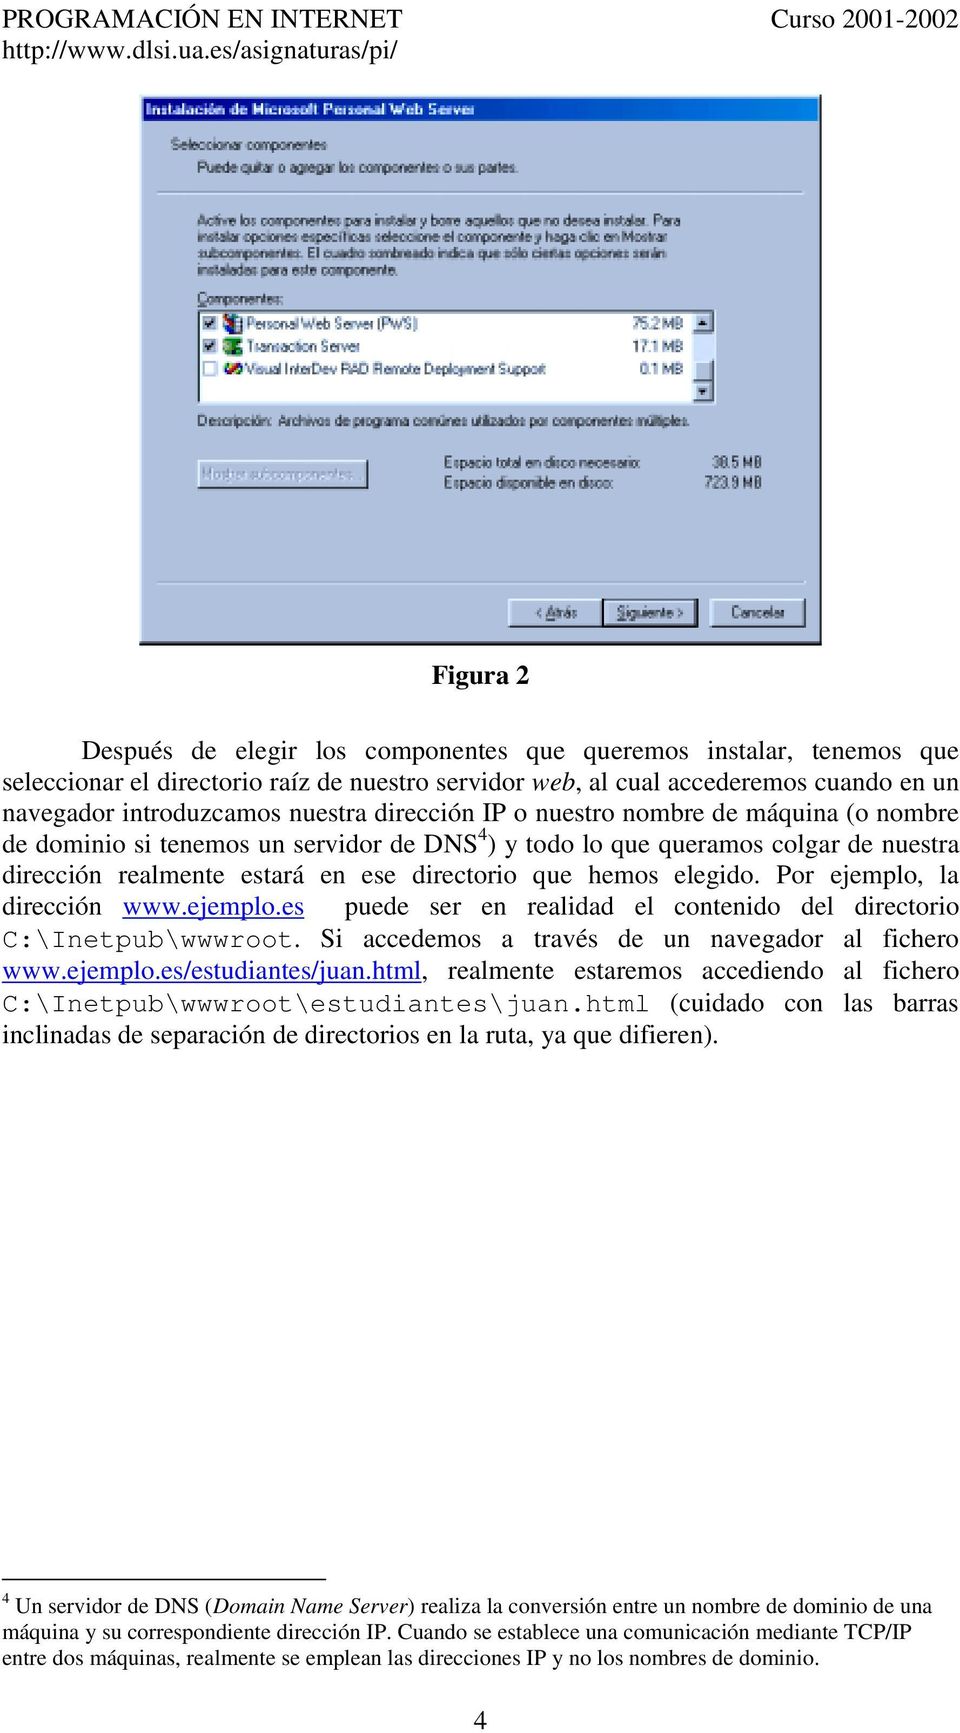 Por ejemplo, la dirección www.ejemplo.es puede ser en realidad el contenido del directorio C:\Inetpub\wwwroot. Si accedemos a través de un navegador al fichero www.ejemplo.es/estudiantes/juan.